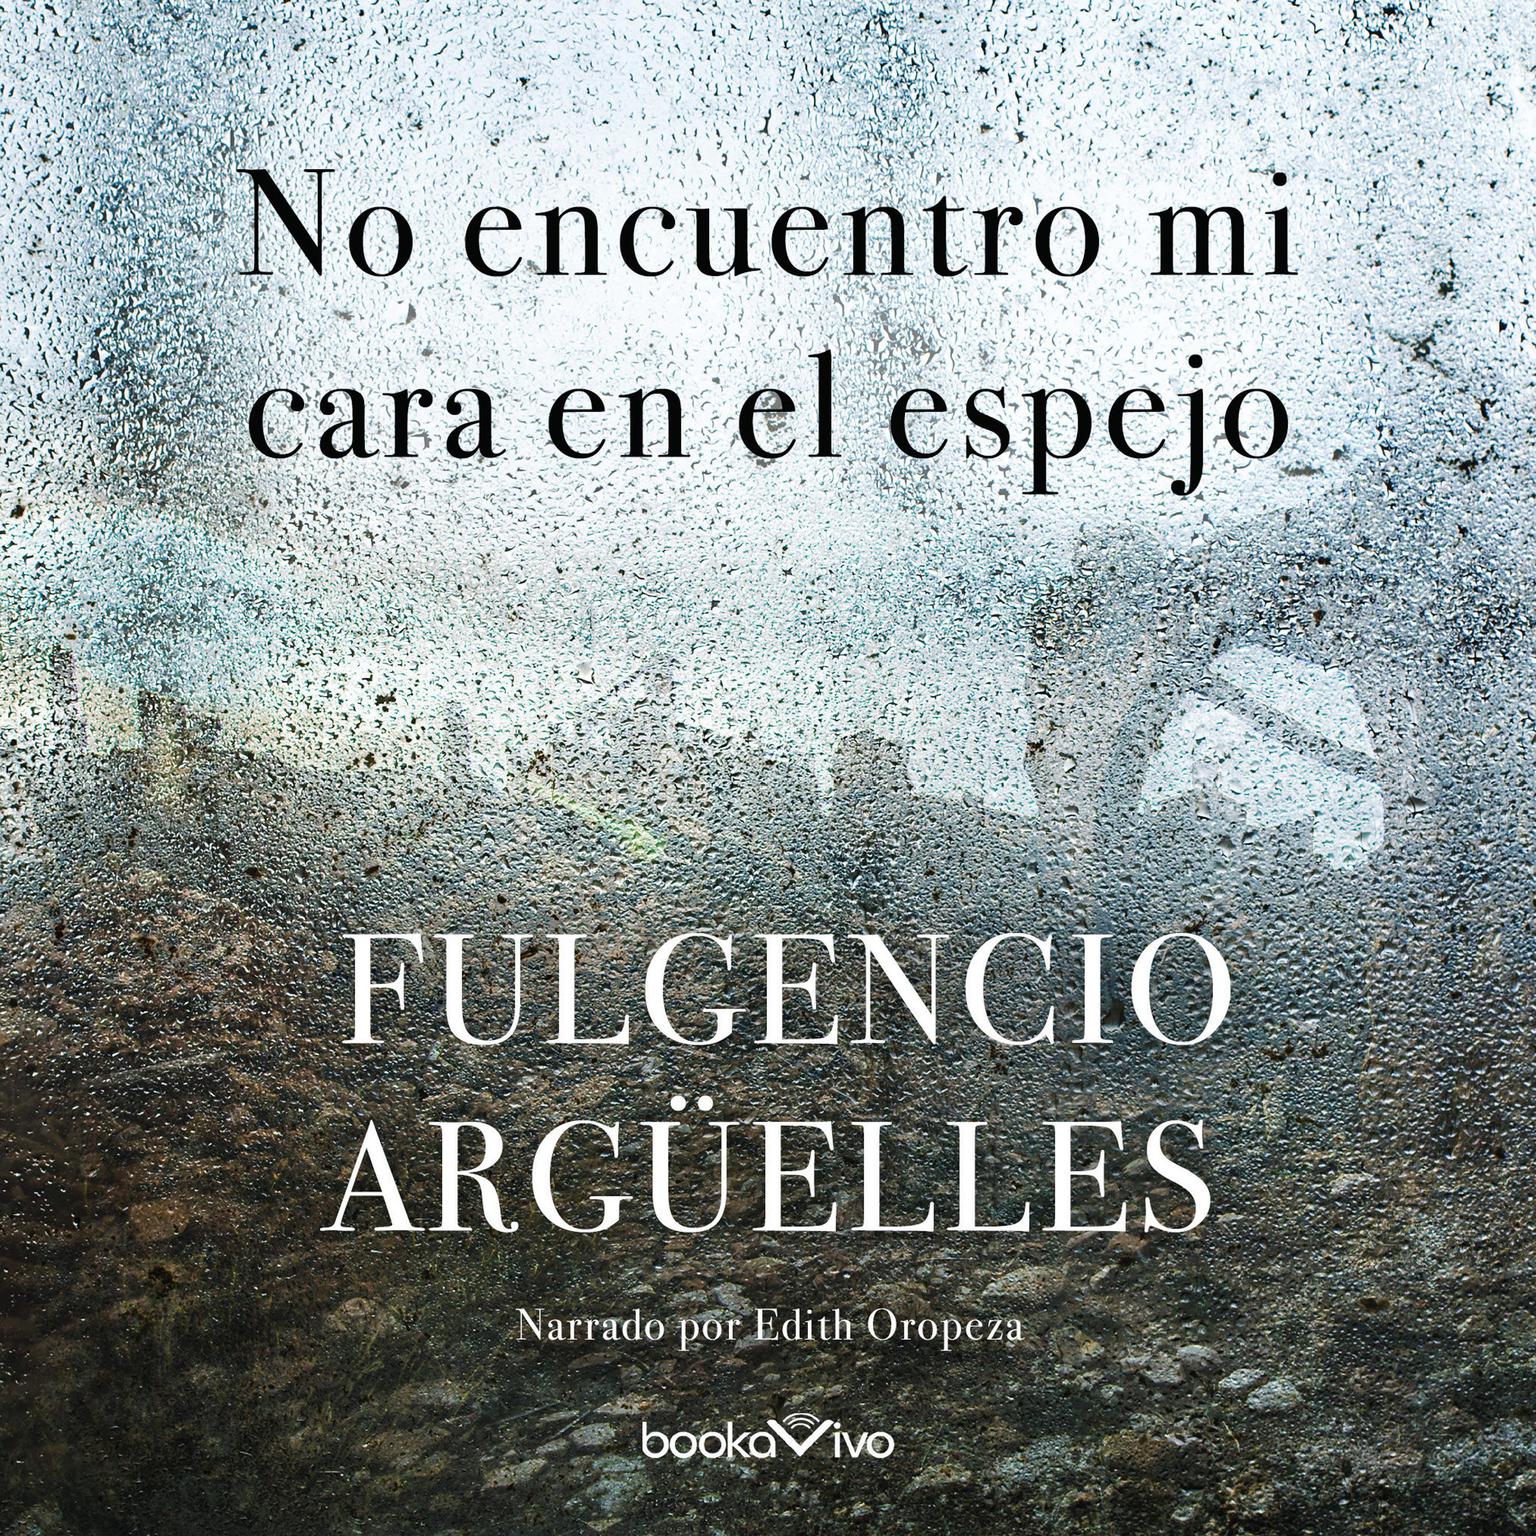 No encuentro mi cara en el espejo (I Dont See My Face in the Mirror) Audiobook, by Fulgencio Arguelles